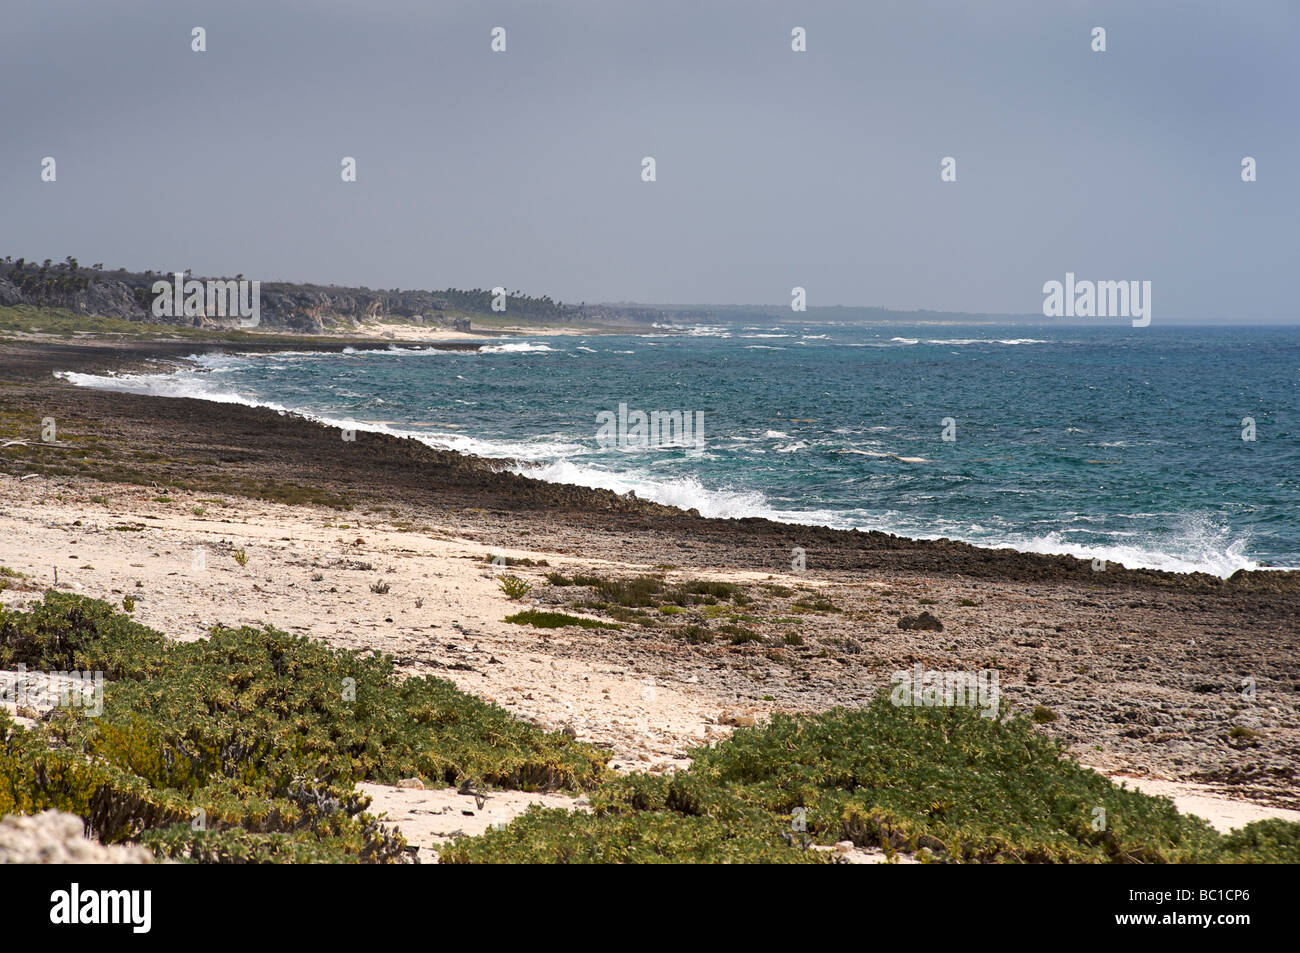 Windswept Bahia de Corrientes. Playa Caleta Larga, Playa la Barca towards Cabo de San Antonio. Cuba's westernmost coastline Stock Photo